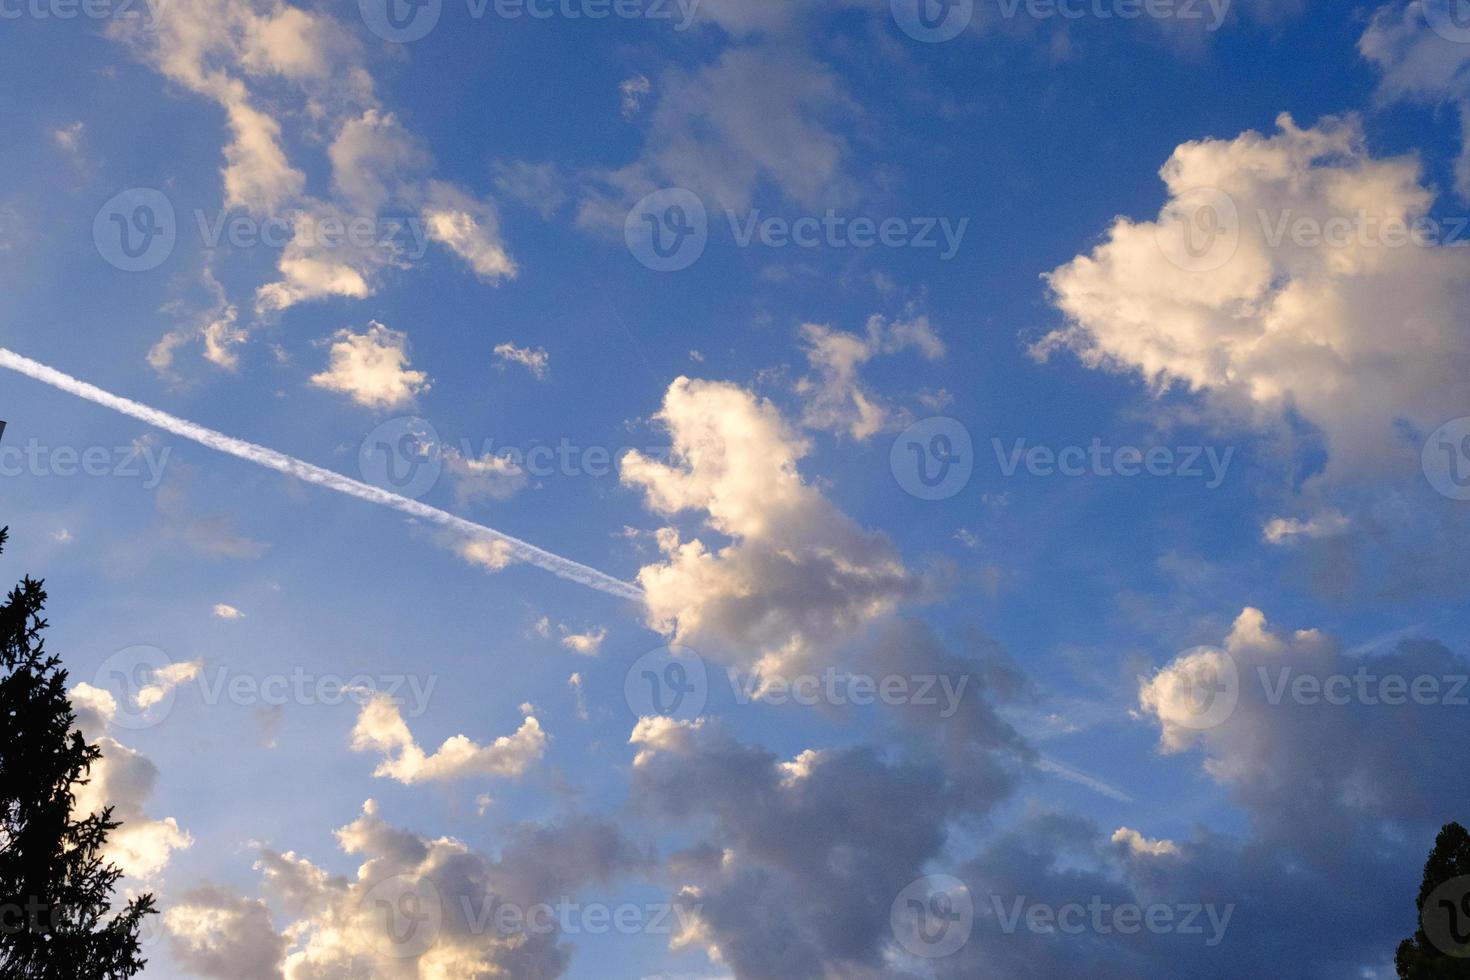 céu azul, nuvens ensolaradas e a trilha de rastro de avião branco, fundo de paisagem de nuvens matinal, avião voando nas nuvens fofas, beleza do tempo. foto